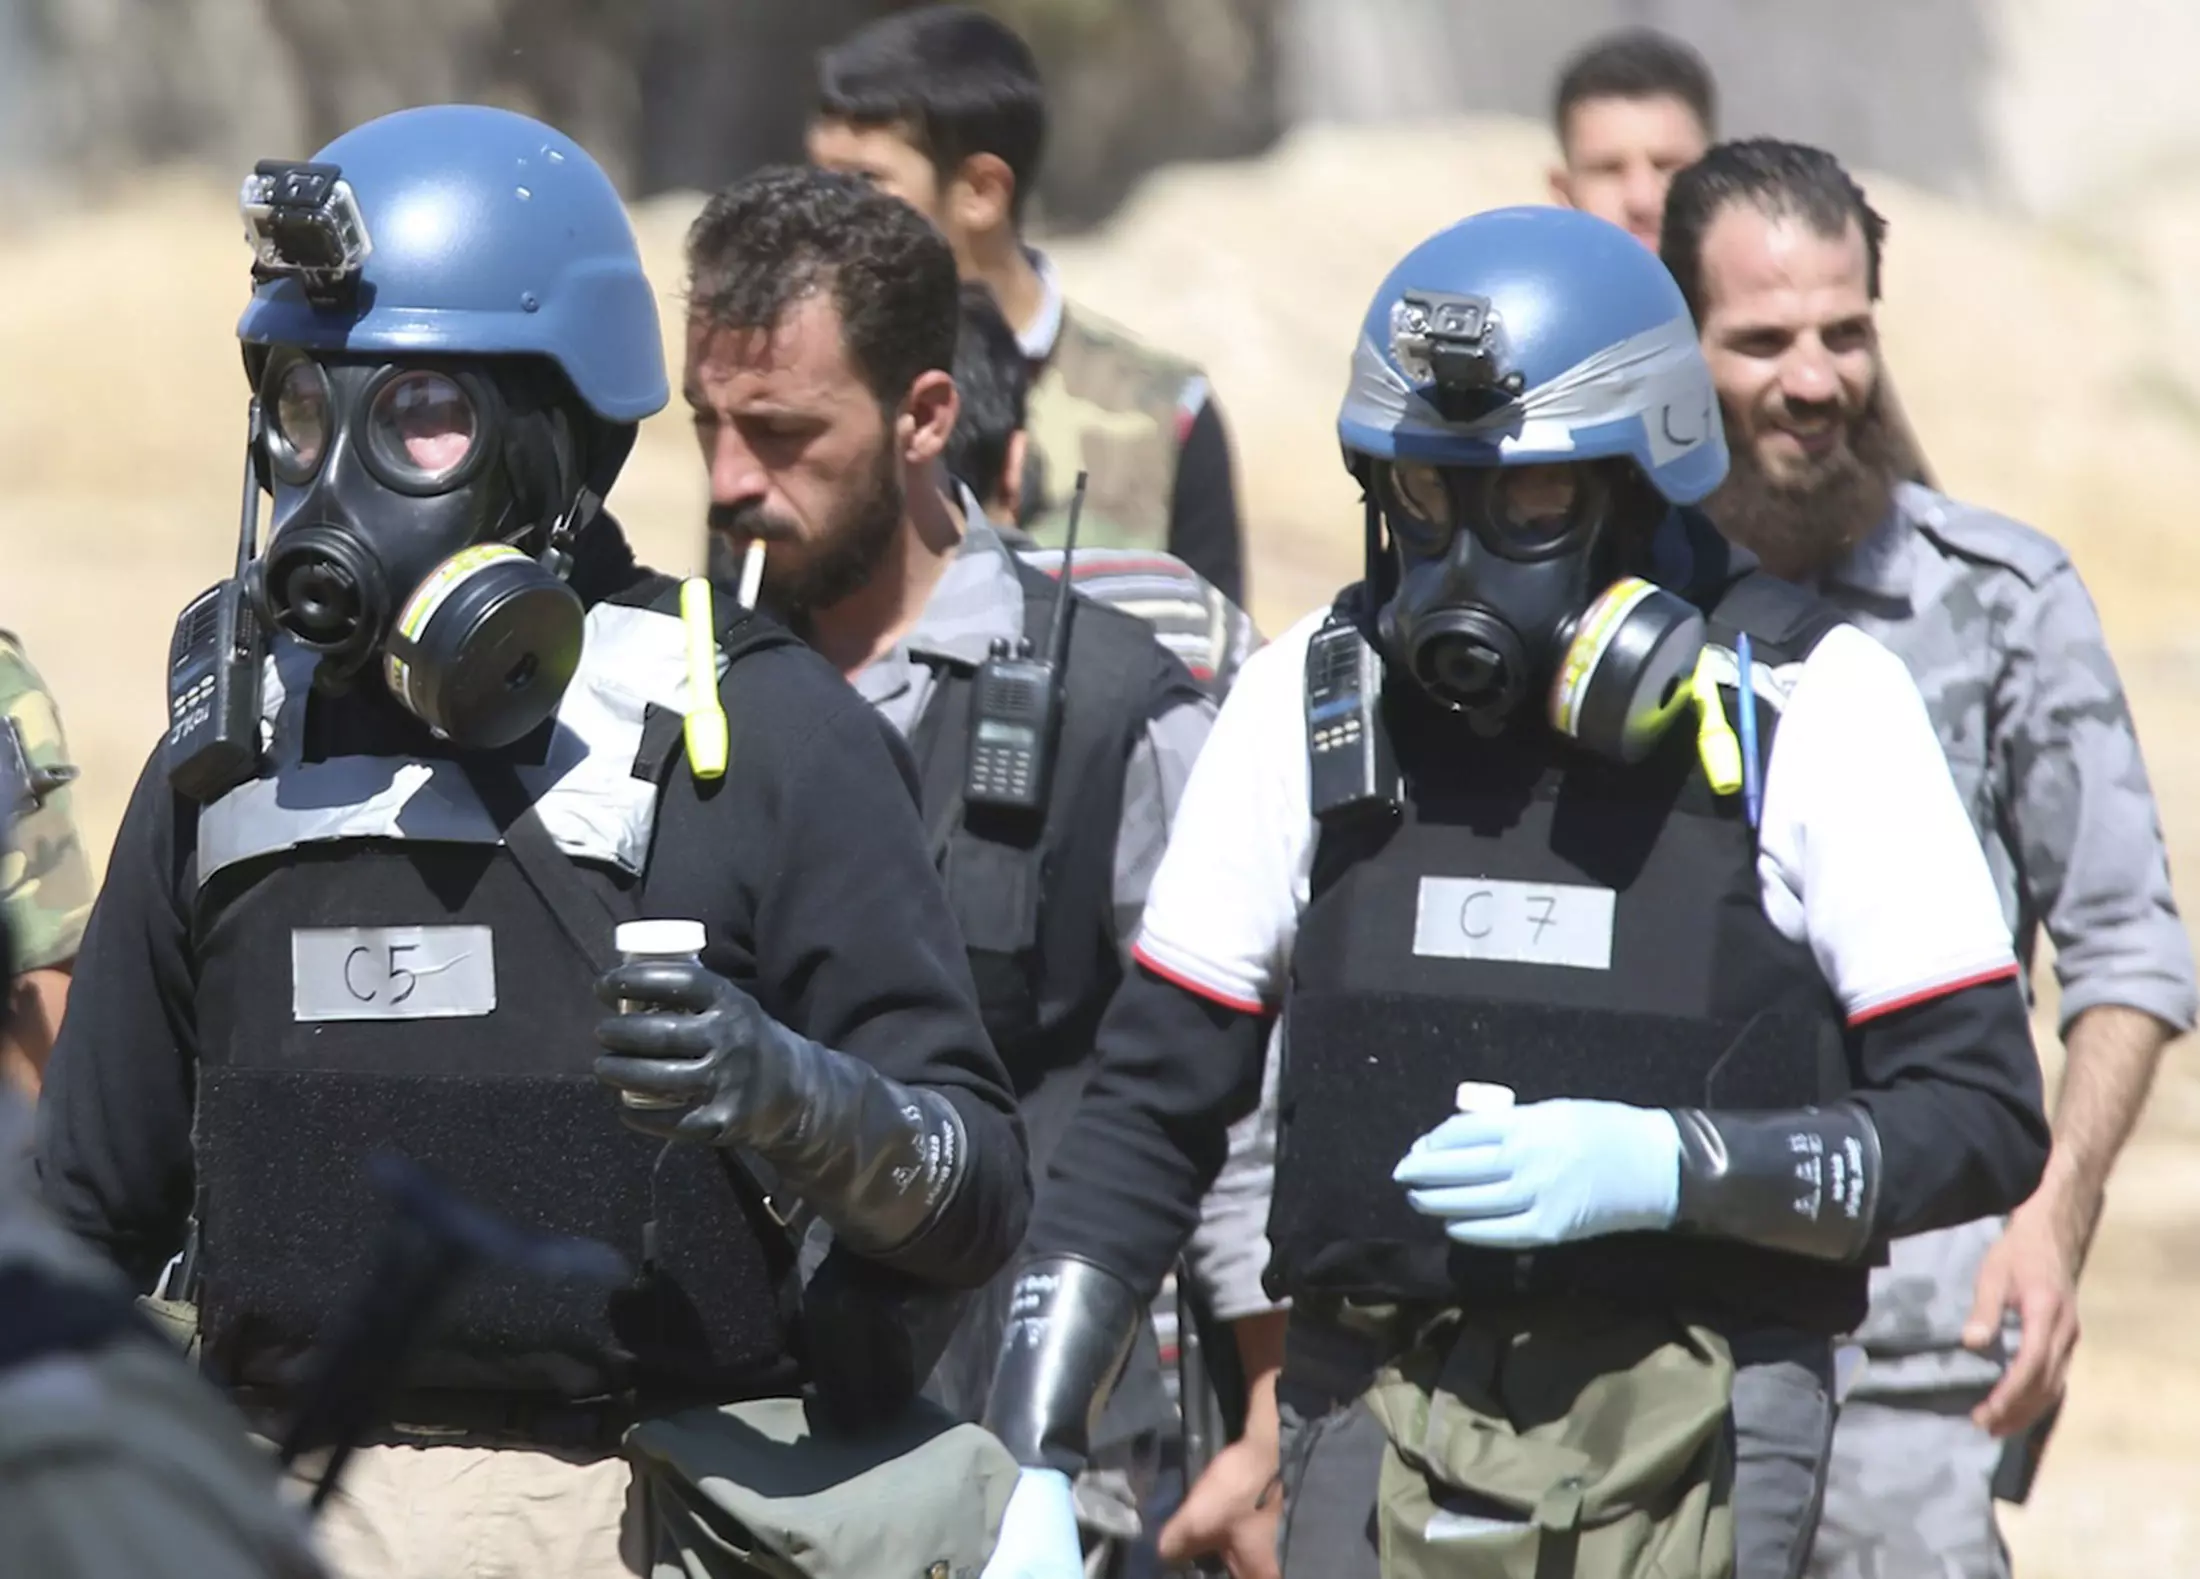 הדו"ח המלא טרם הוגש. פקחי האו"ם לחיפוש נשק כימי מסיירים בדמשק